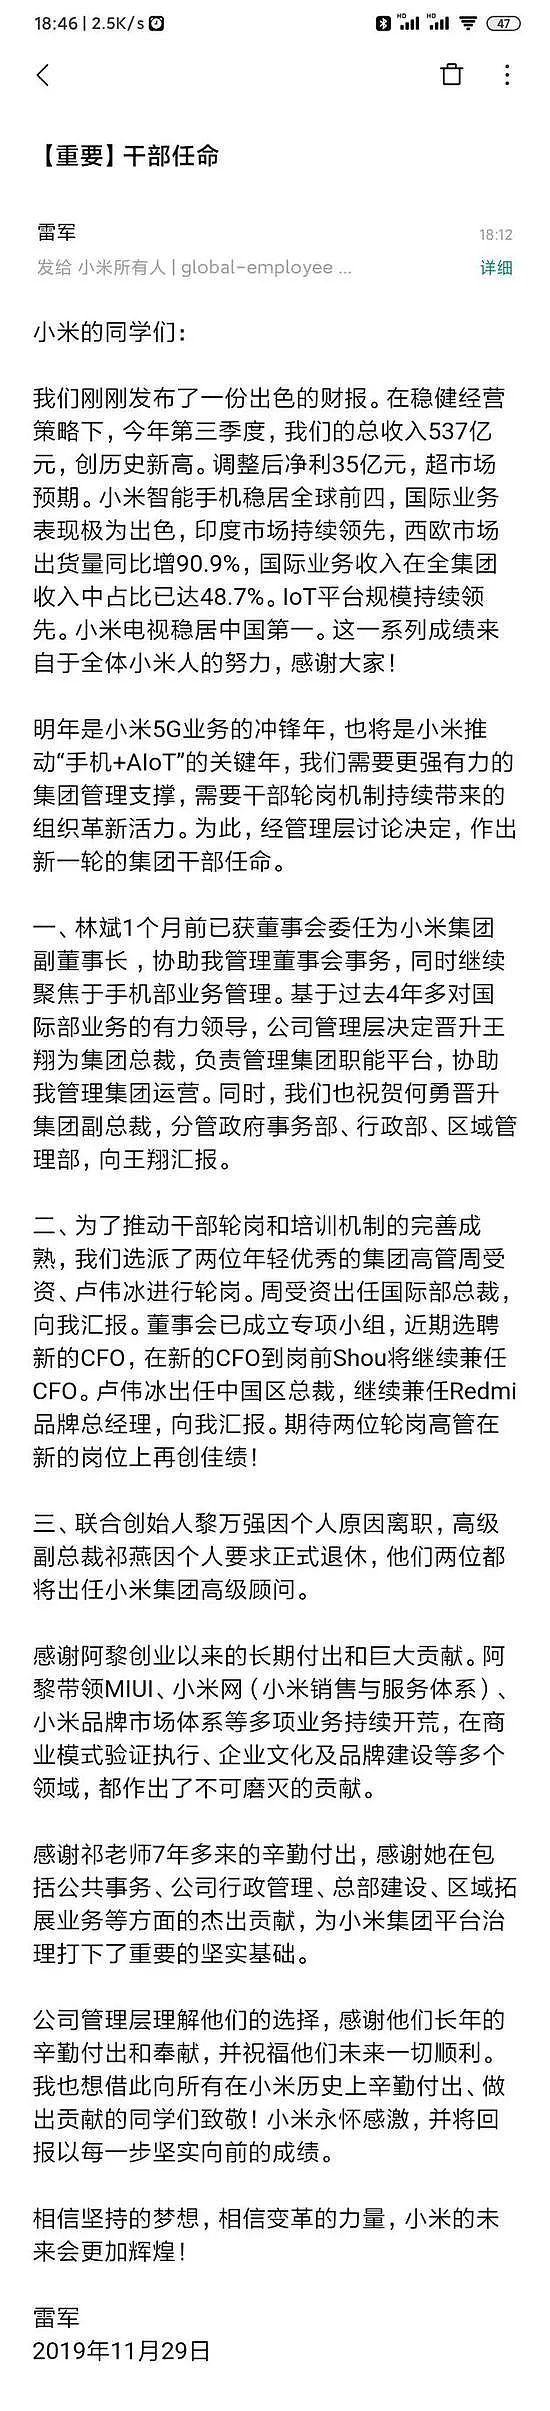 小米发布内部信 宣布了最新高管任命 - 3